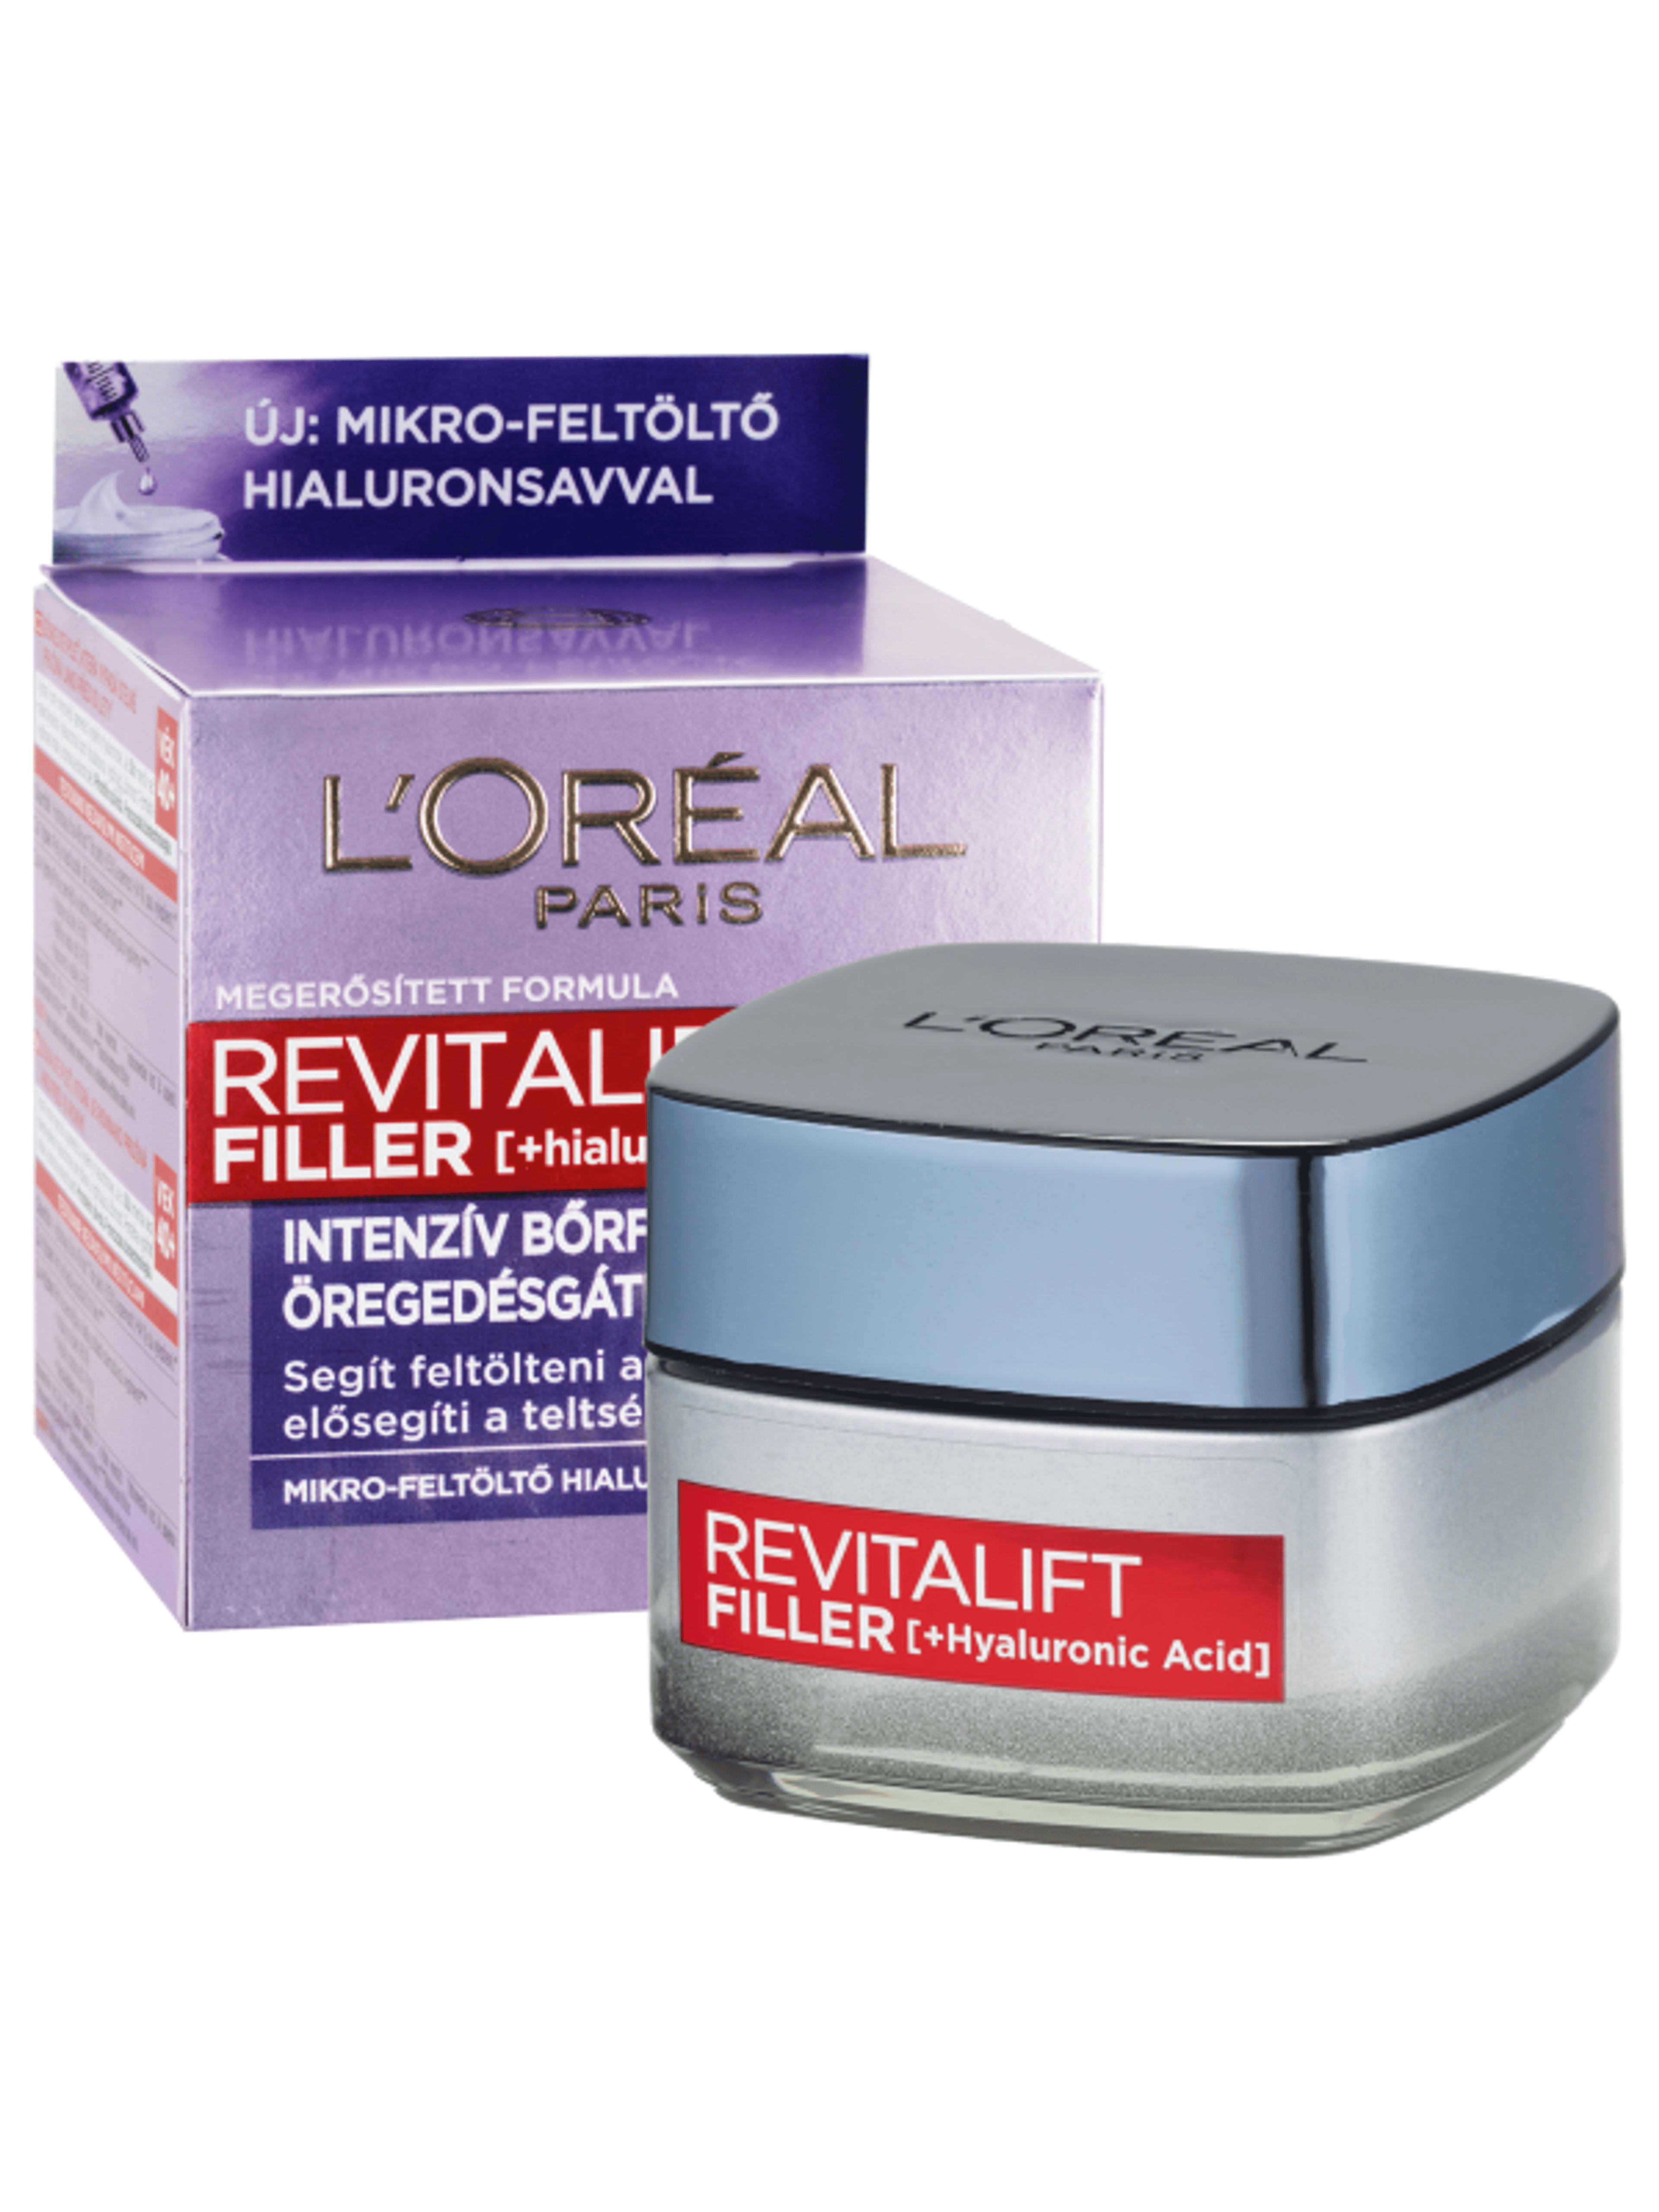 L'Oréal Paris Revitalift Filler ránctalanító,feltöltő nappali krém hialuronsavval 50ml - 1 db-2